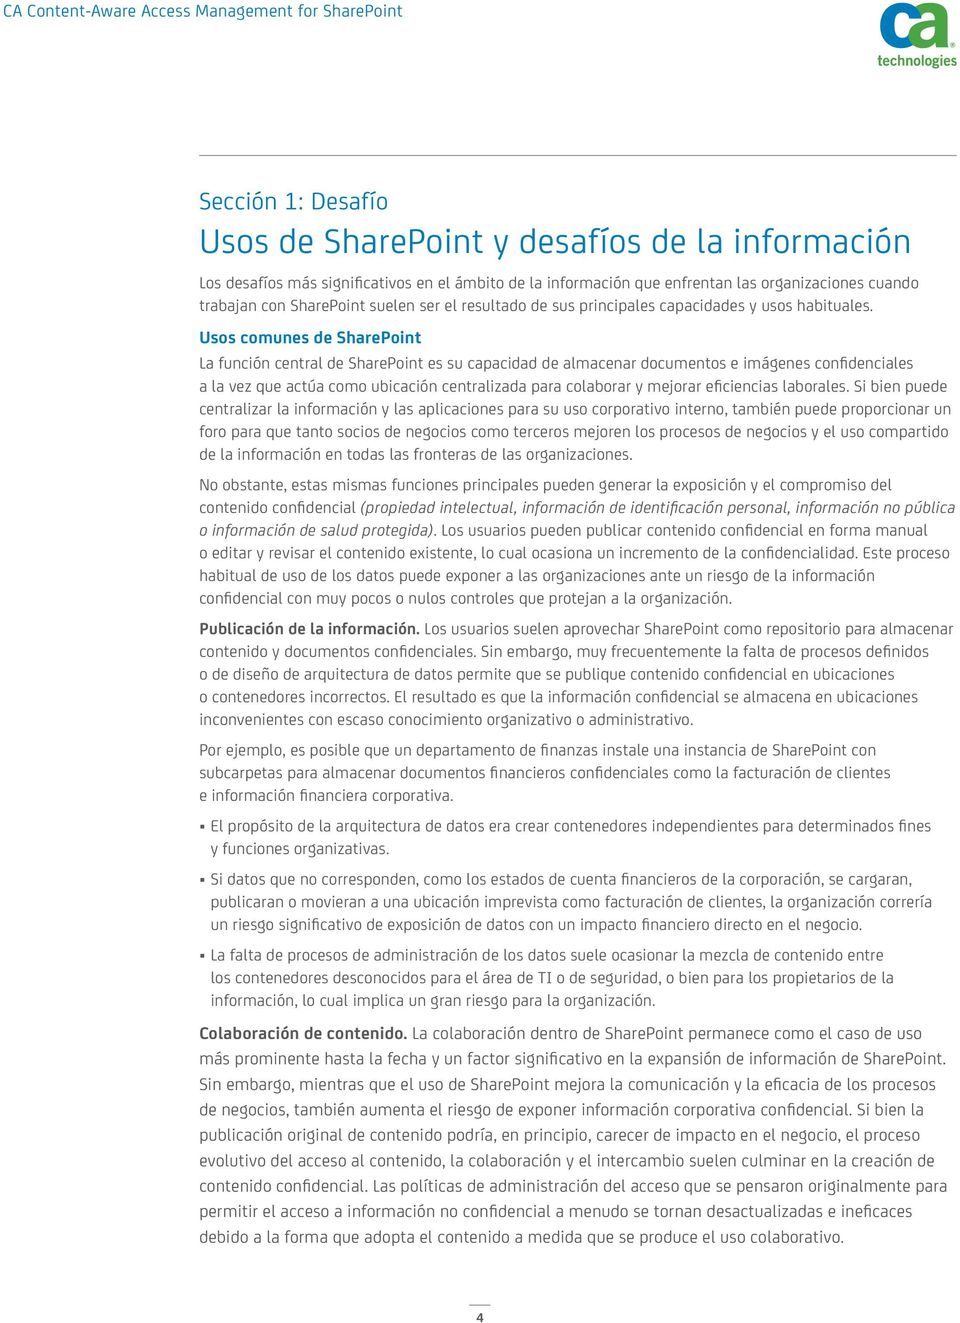 Usos comunes de SharePoint La función central de SharePoint es su capacidad de almacenar documentos e imágenes confidenciales a la vez que actúa como ubicación centralizada para colaborar y mejorar